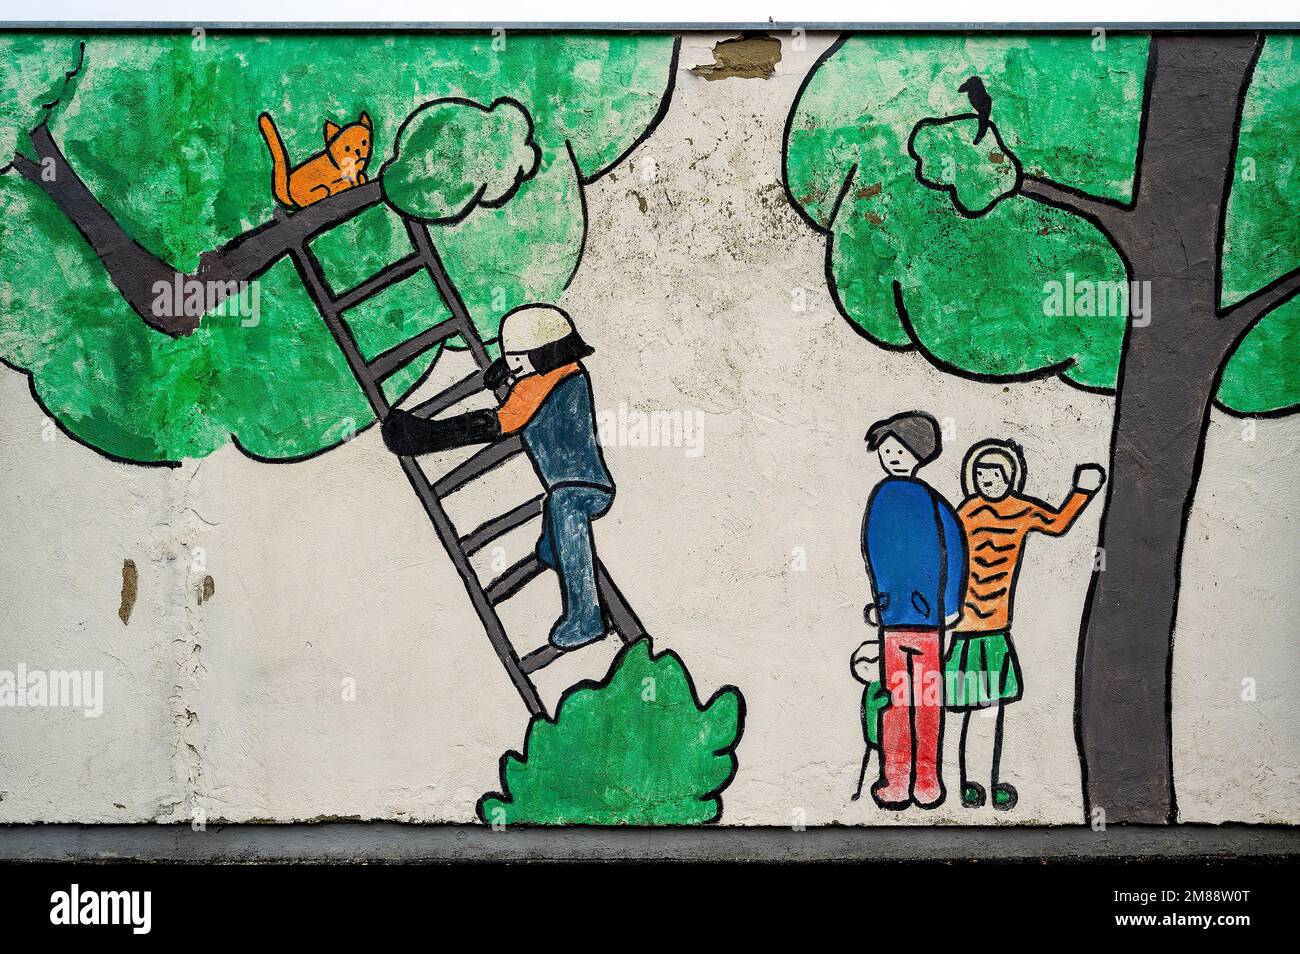 Kindliches Gemälde an einer verfallenden Wand, der Feuerwehrmann holt eine Katze von einem Baum, Kempten, Allgaeu, Bayern, Deutschland Stockfoto